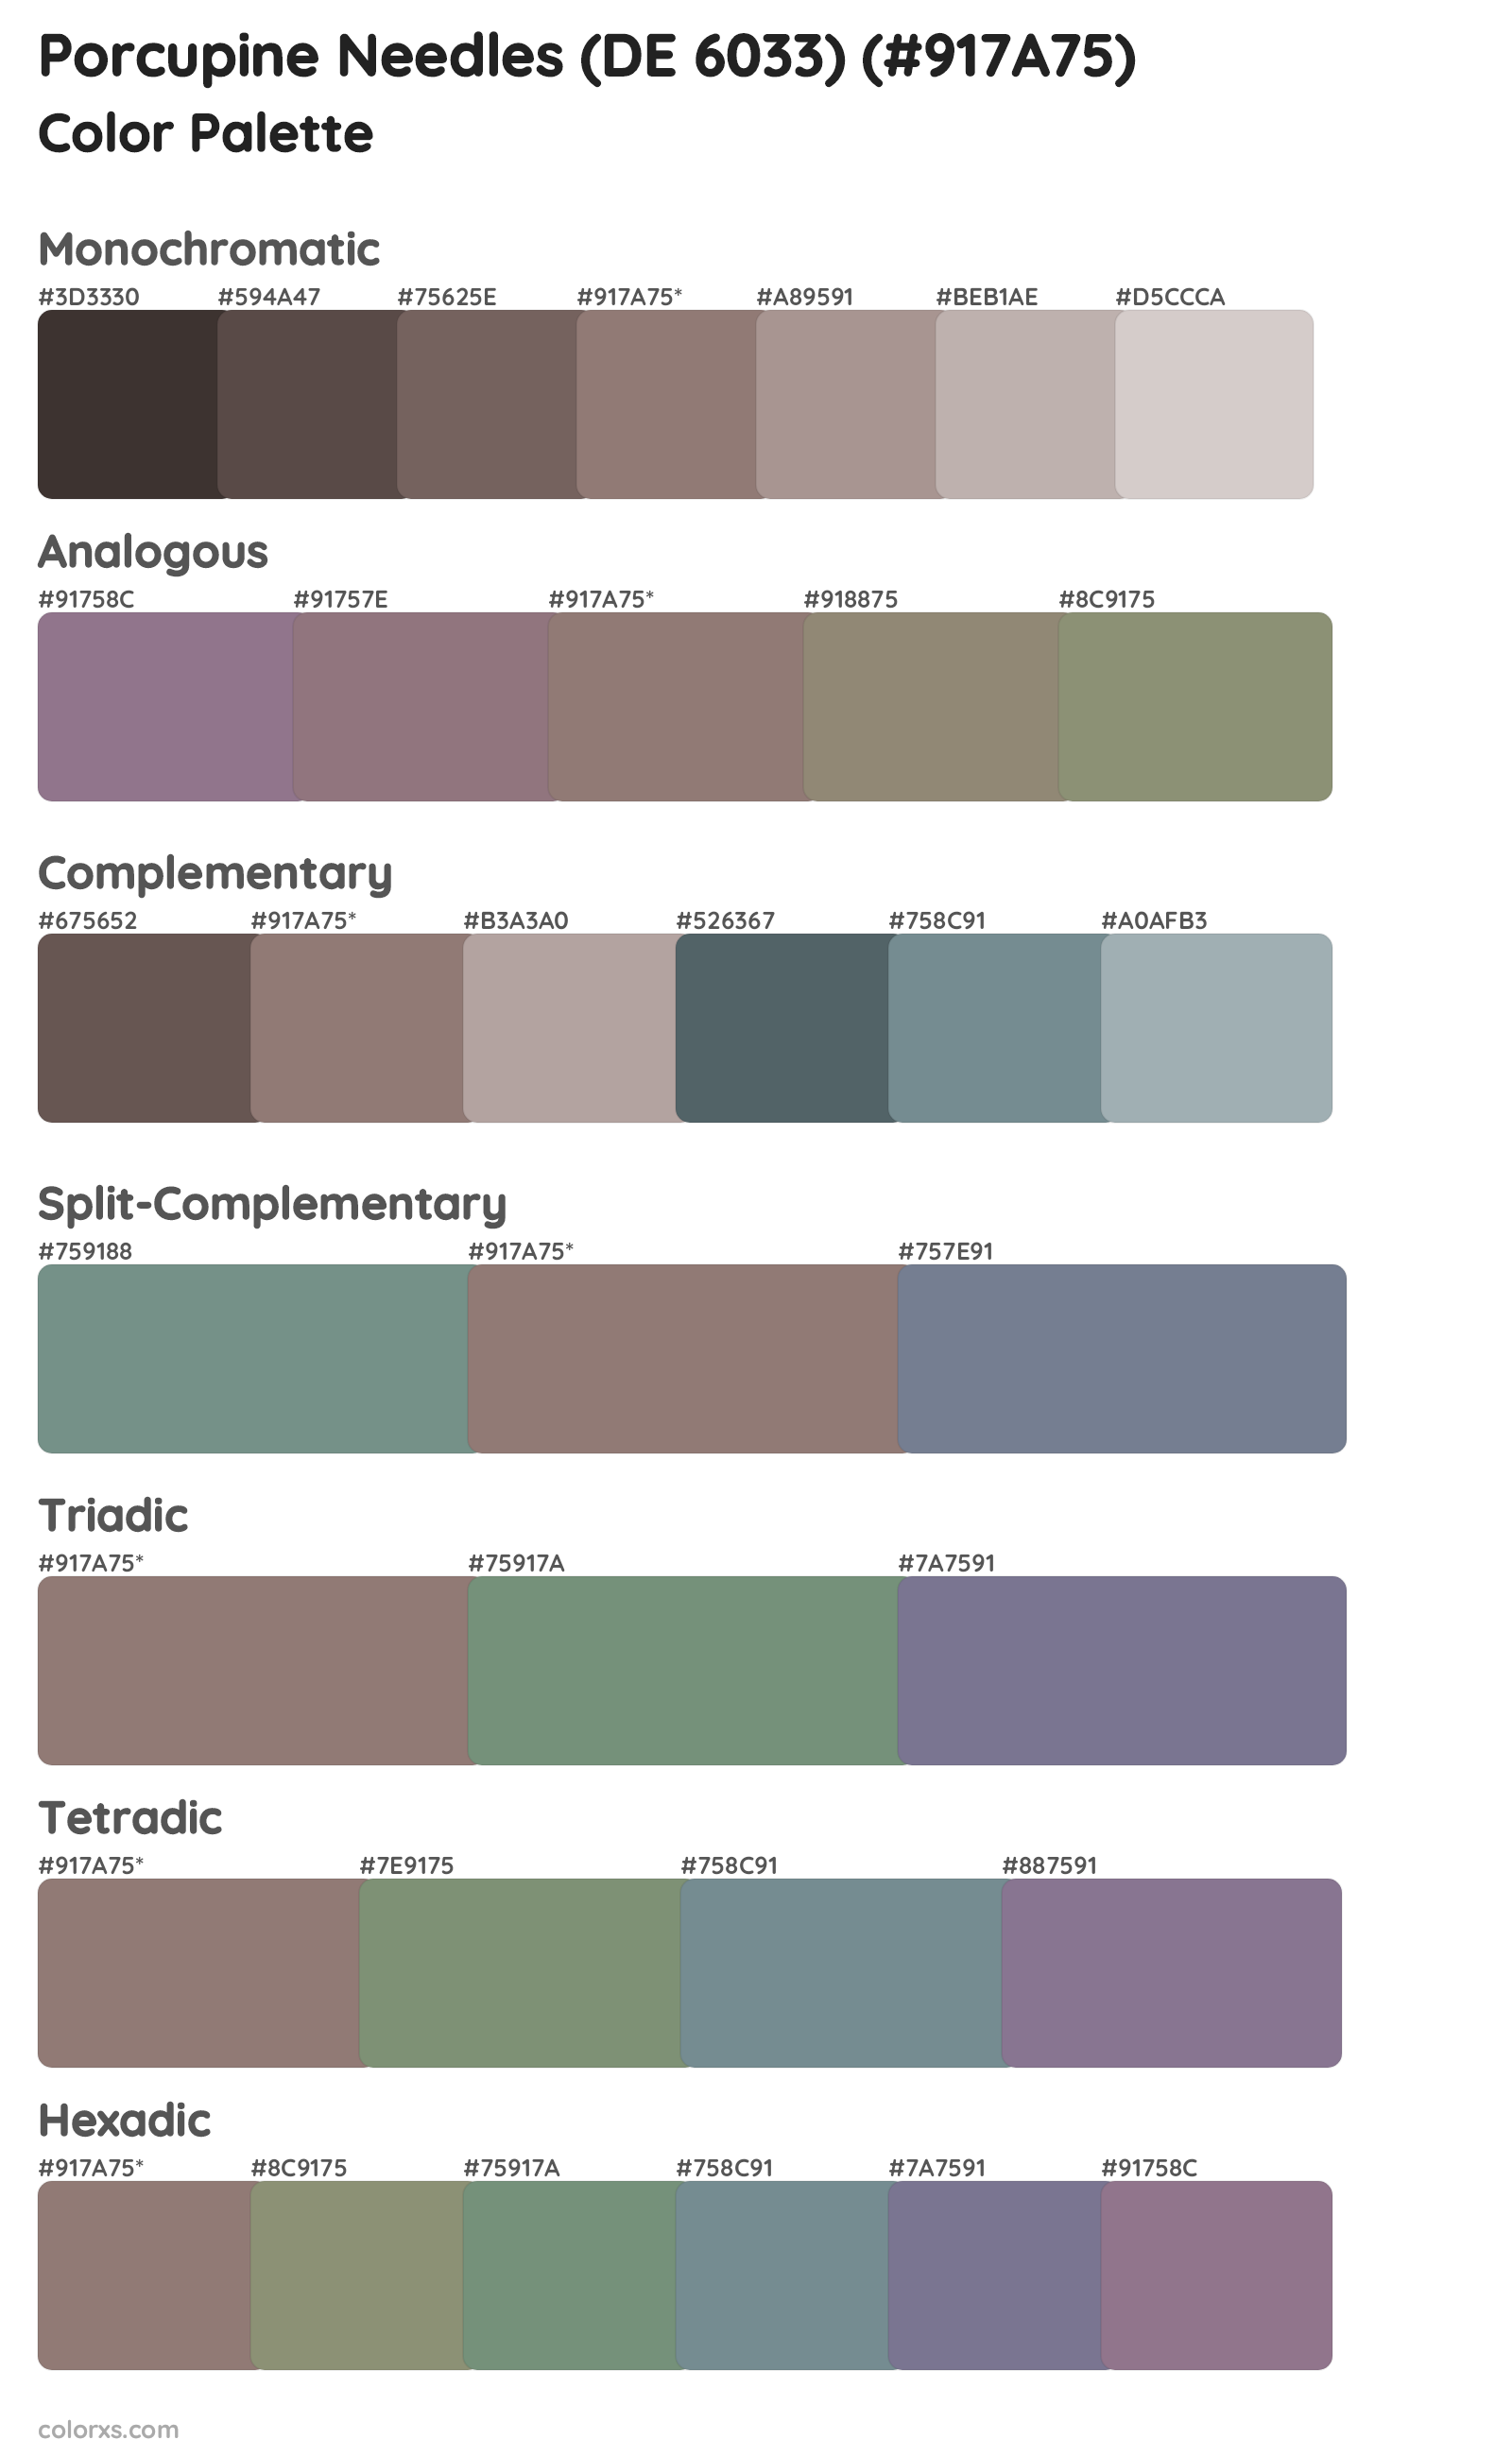 Porcupine Needles (DE 6033) Color Scheme Palettes